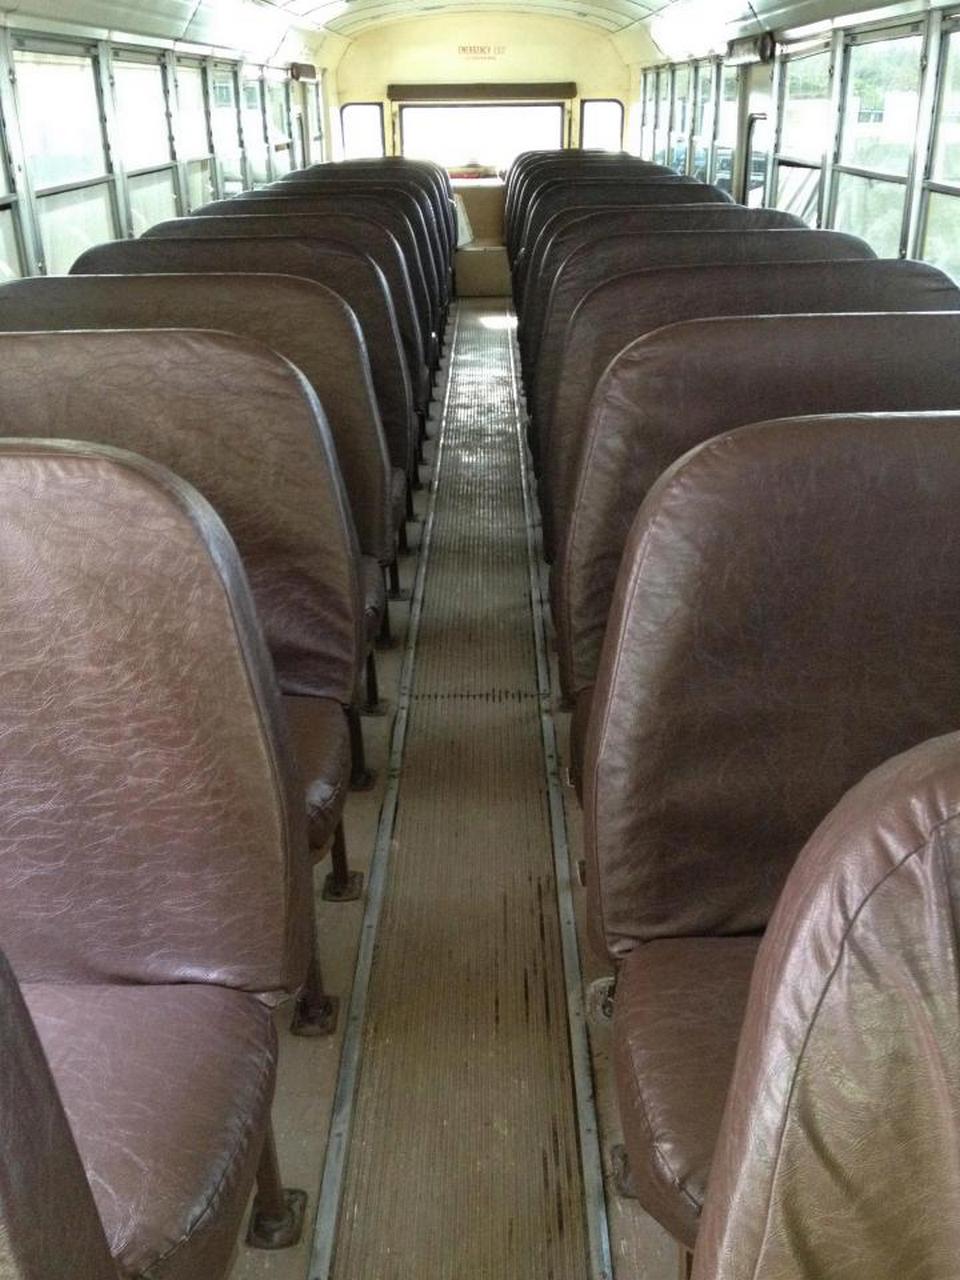 Семья из пяти человек переехала жить в старый школьный автобус